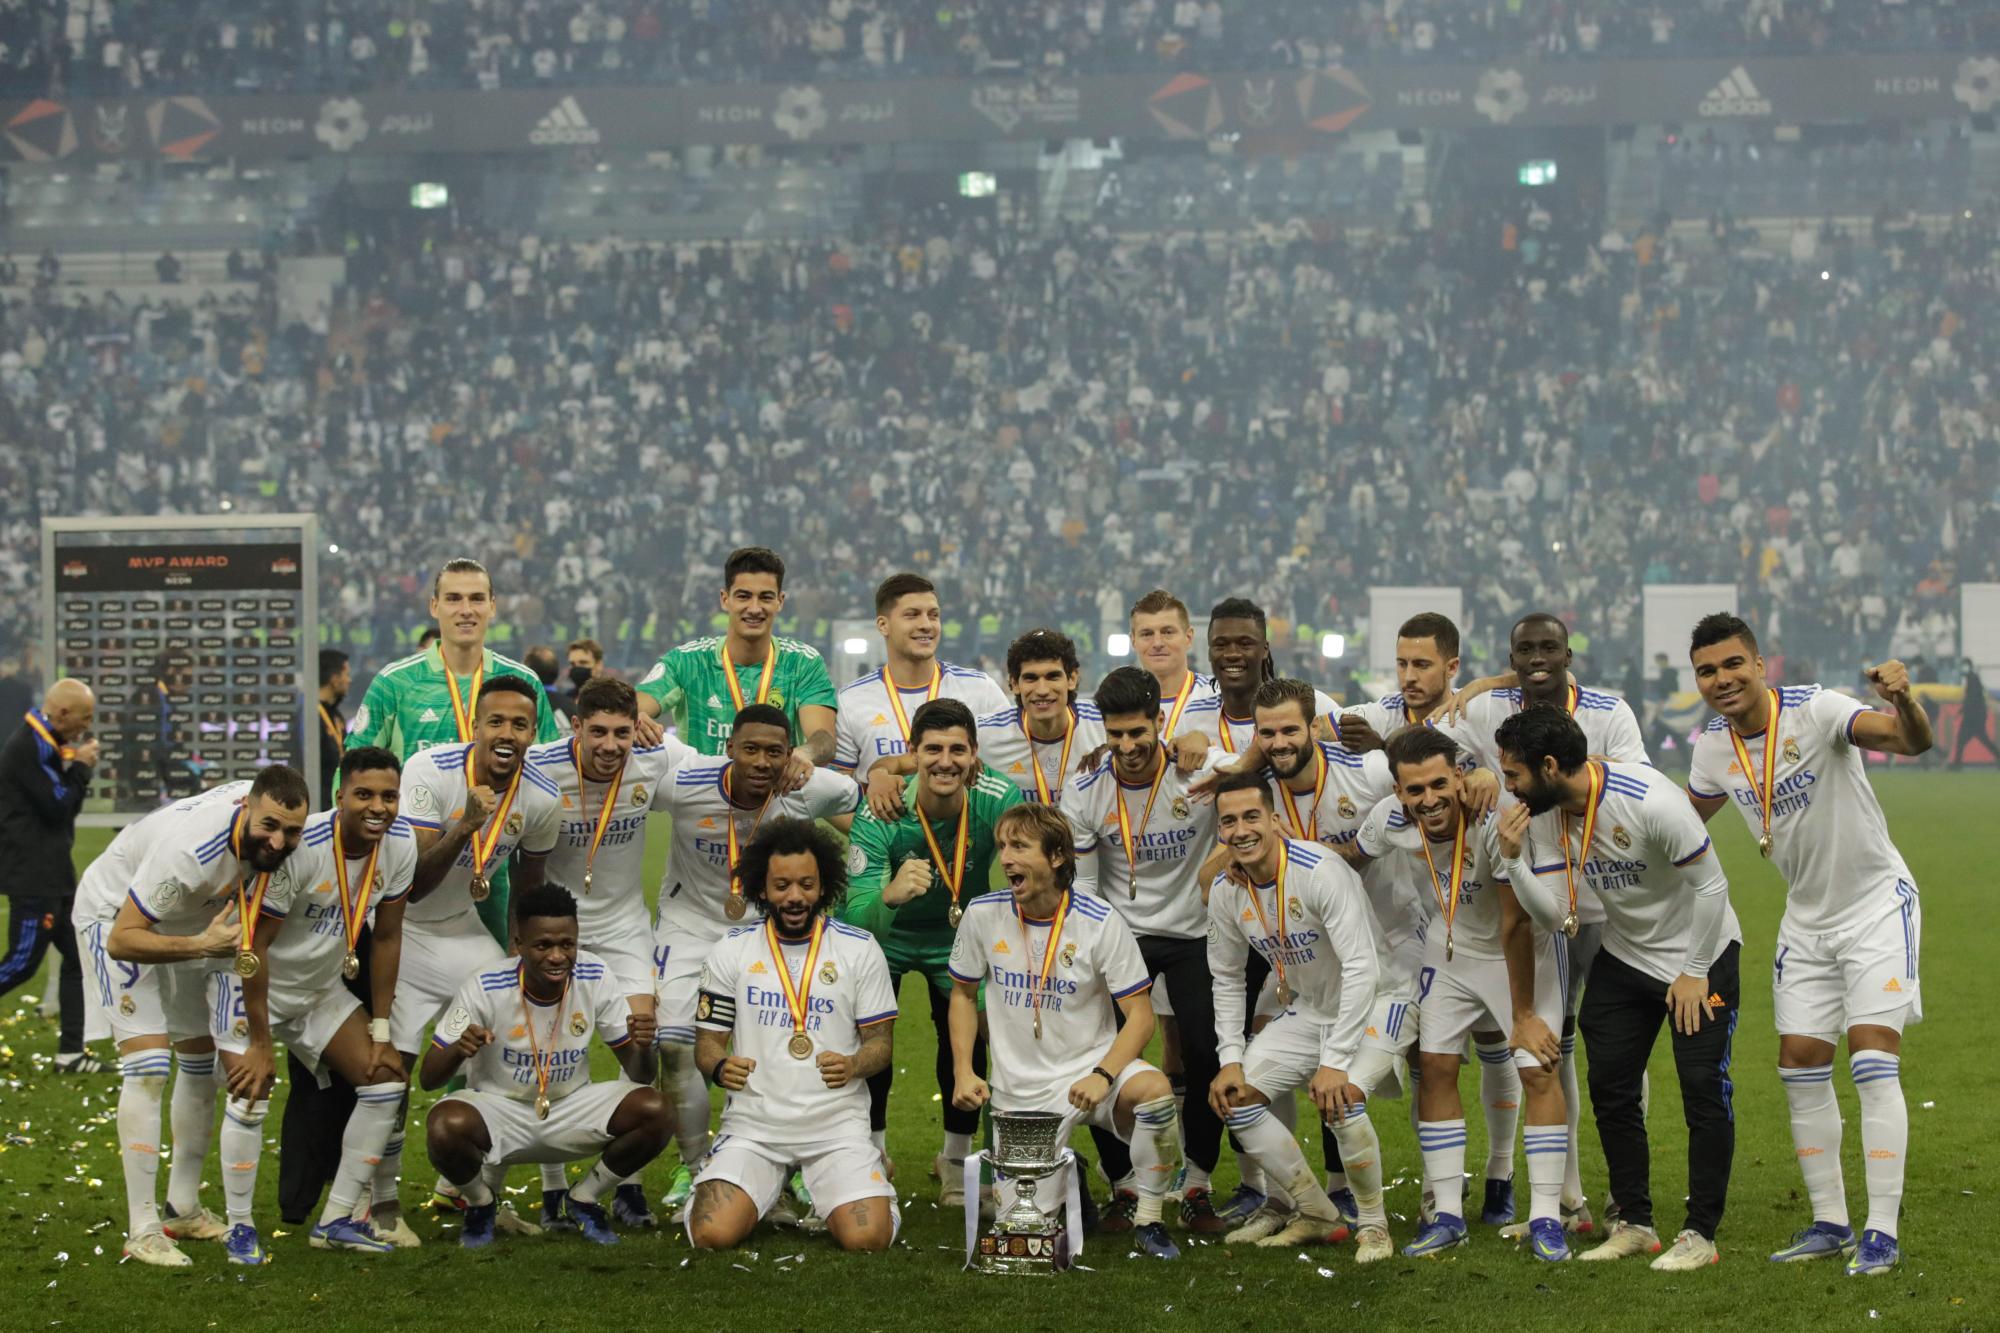 La plantilla del Real Madrid posando con la Copa obtenida.